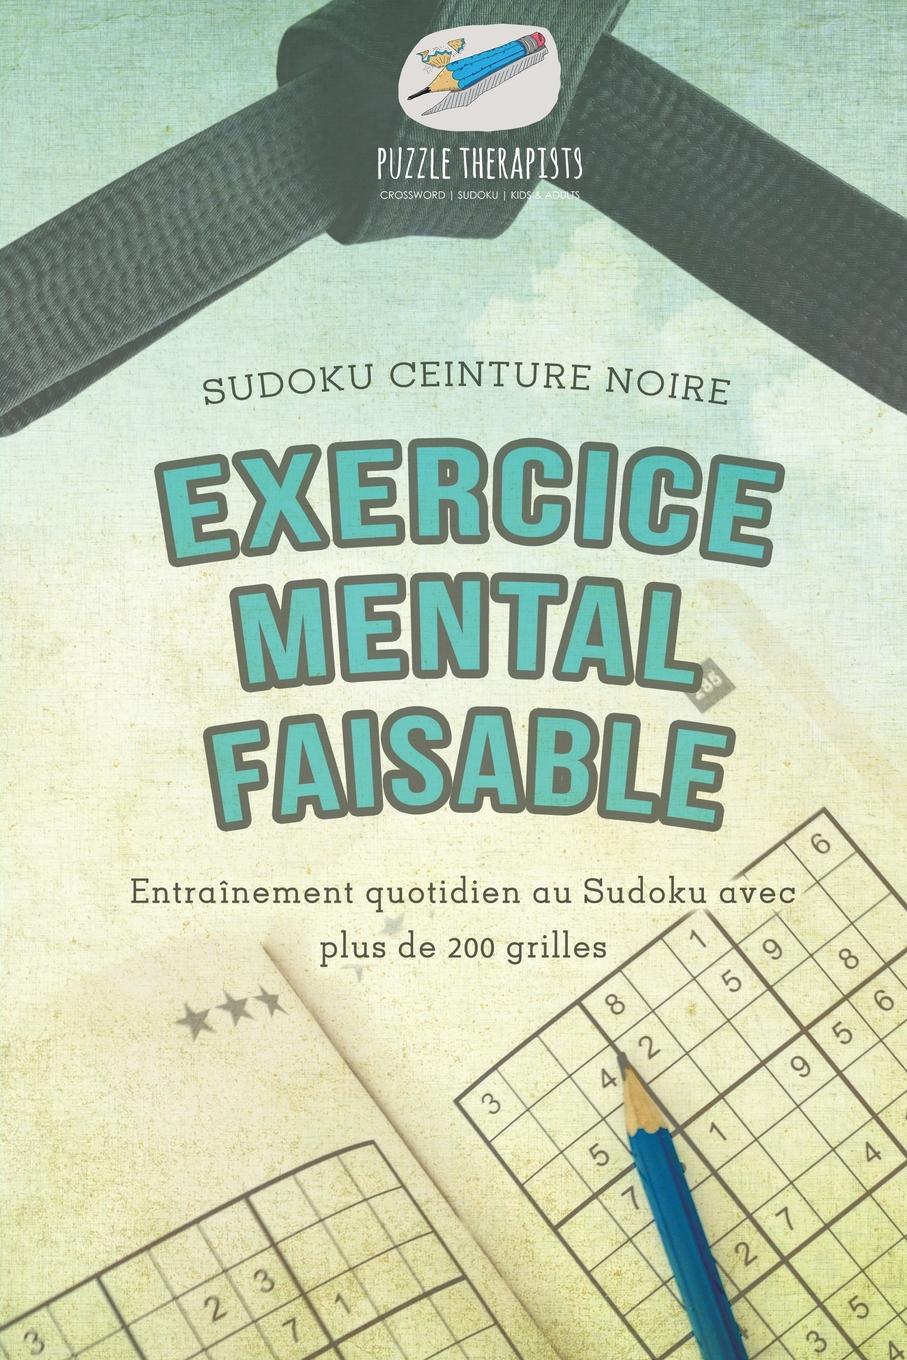 Puzzle Therapist Exercice mental faisable . Sudoku ceinture noire . Entrainement quotidien au Sudoku avec plus de 200 grilles